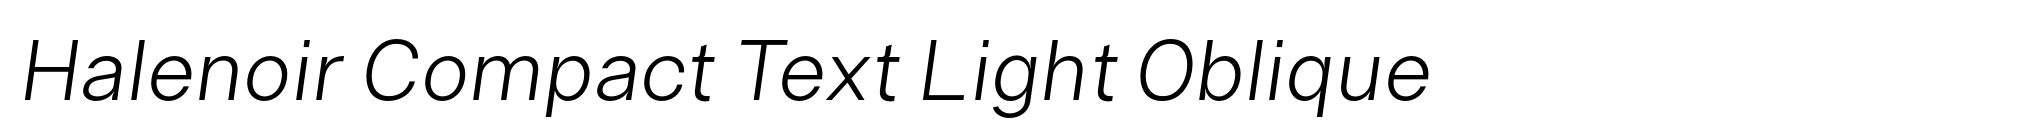 Halenoir Compact Text Light Oblique image